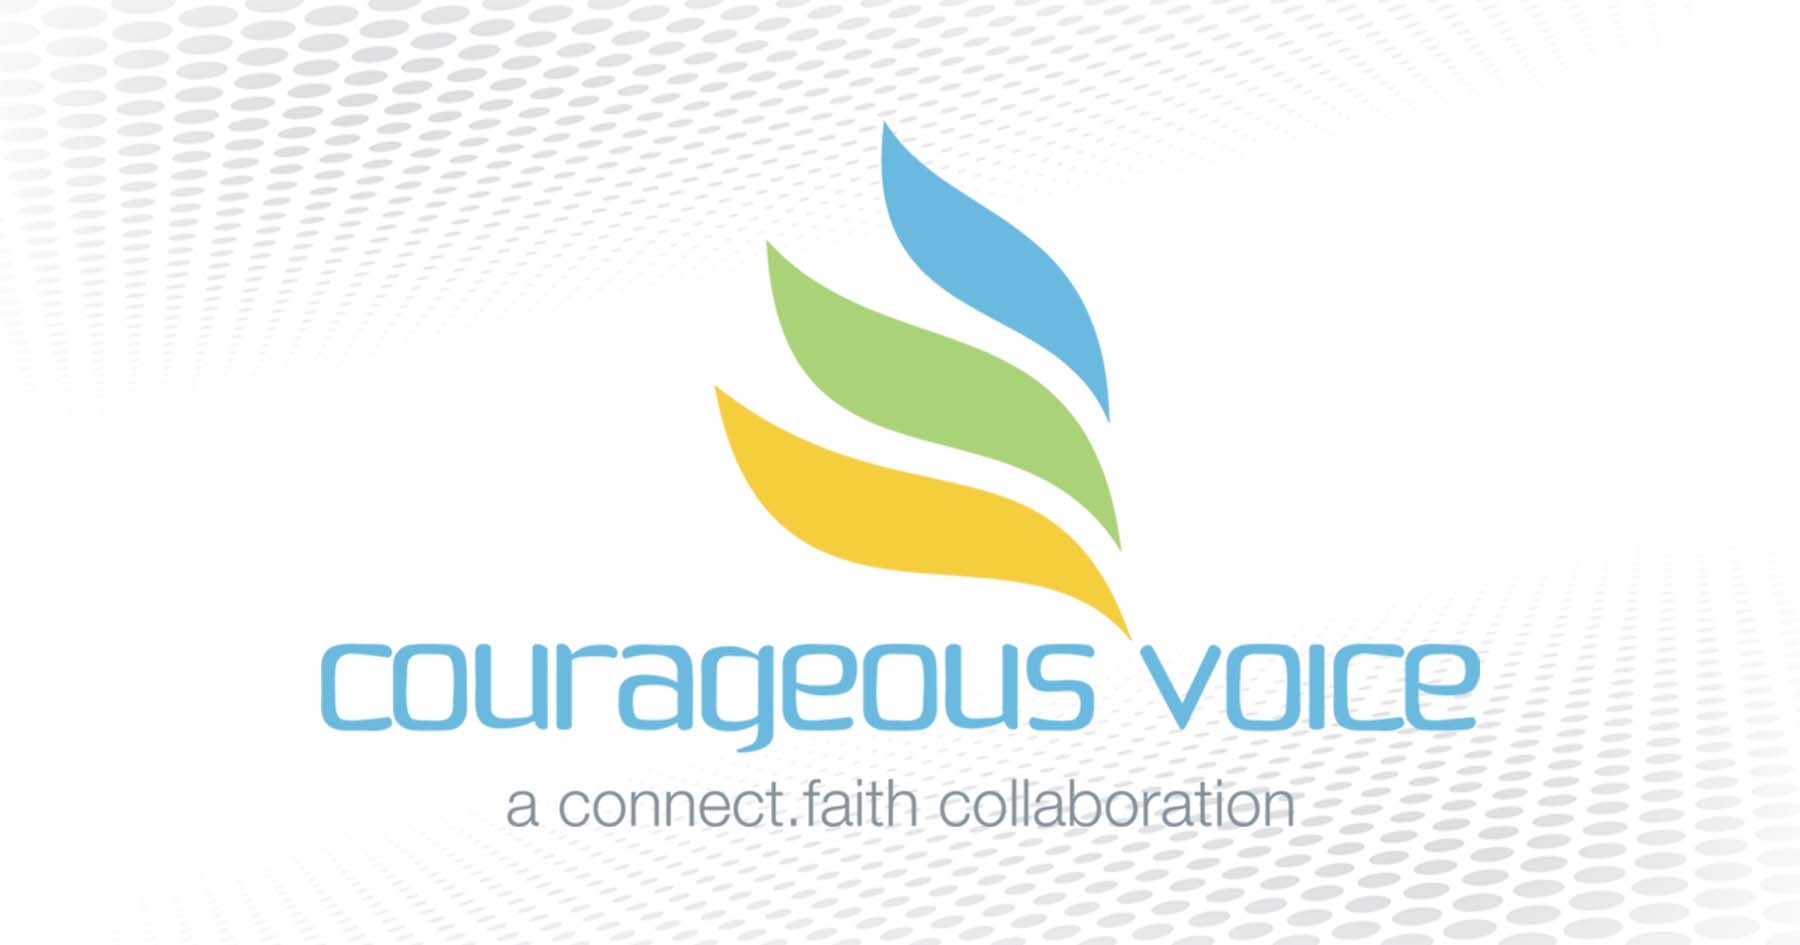 Gene Pritsker | “Courageous Voice” | connect.faith